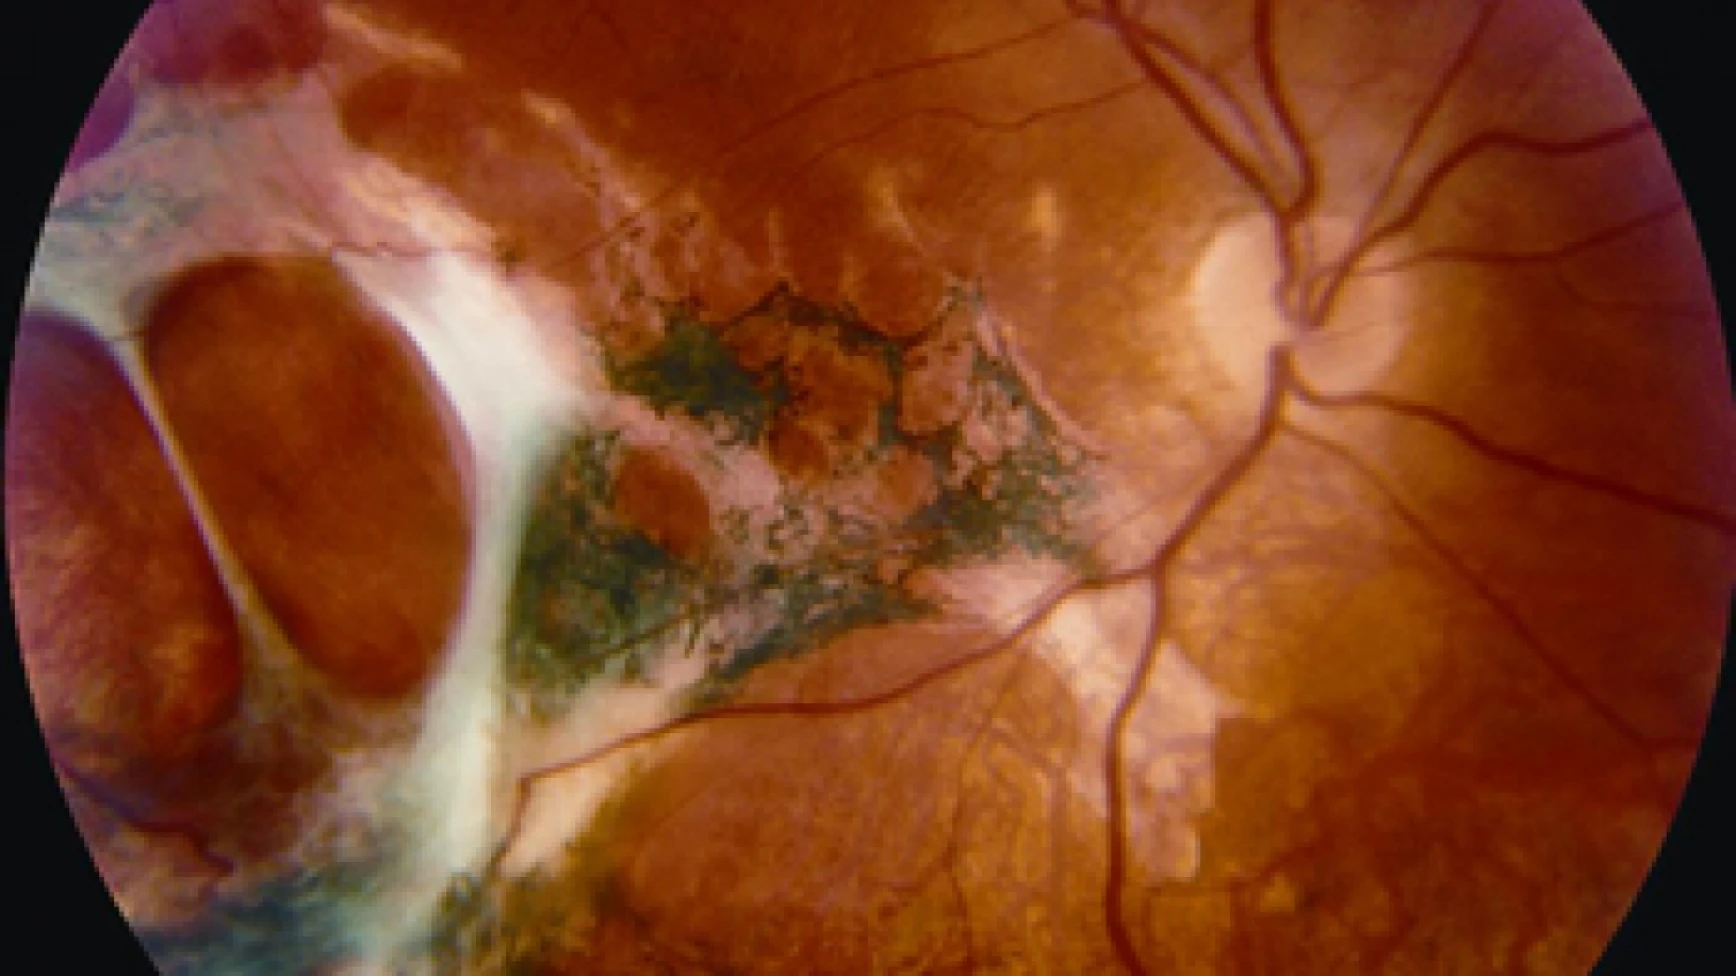 Göz ovuşturmak retina hasarına yol açabilir